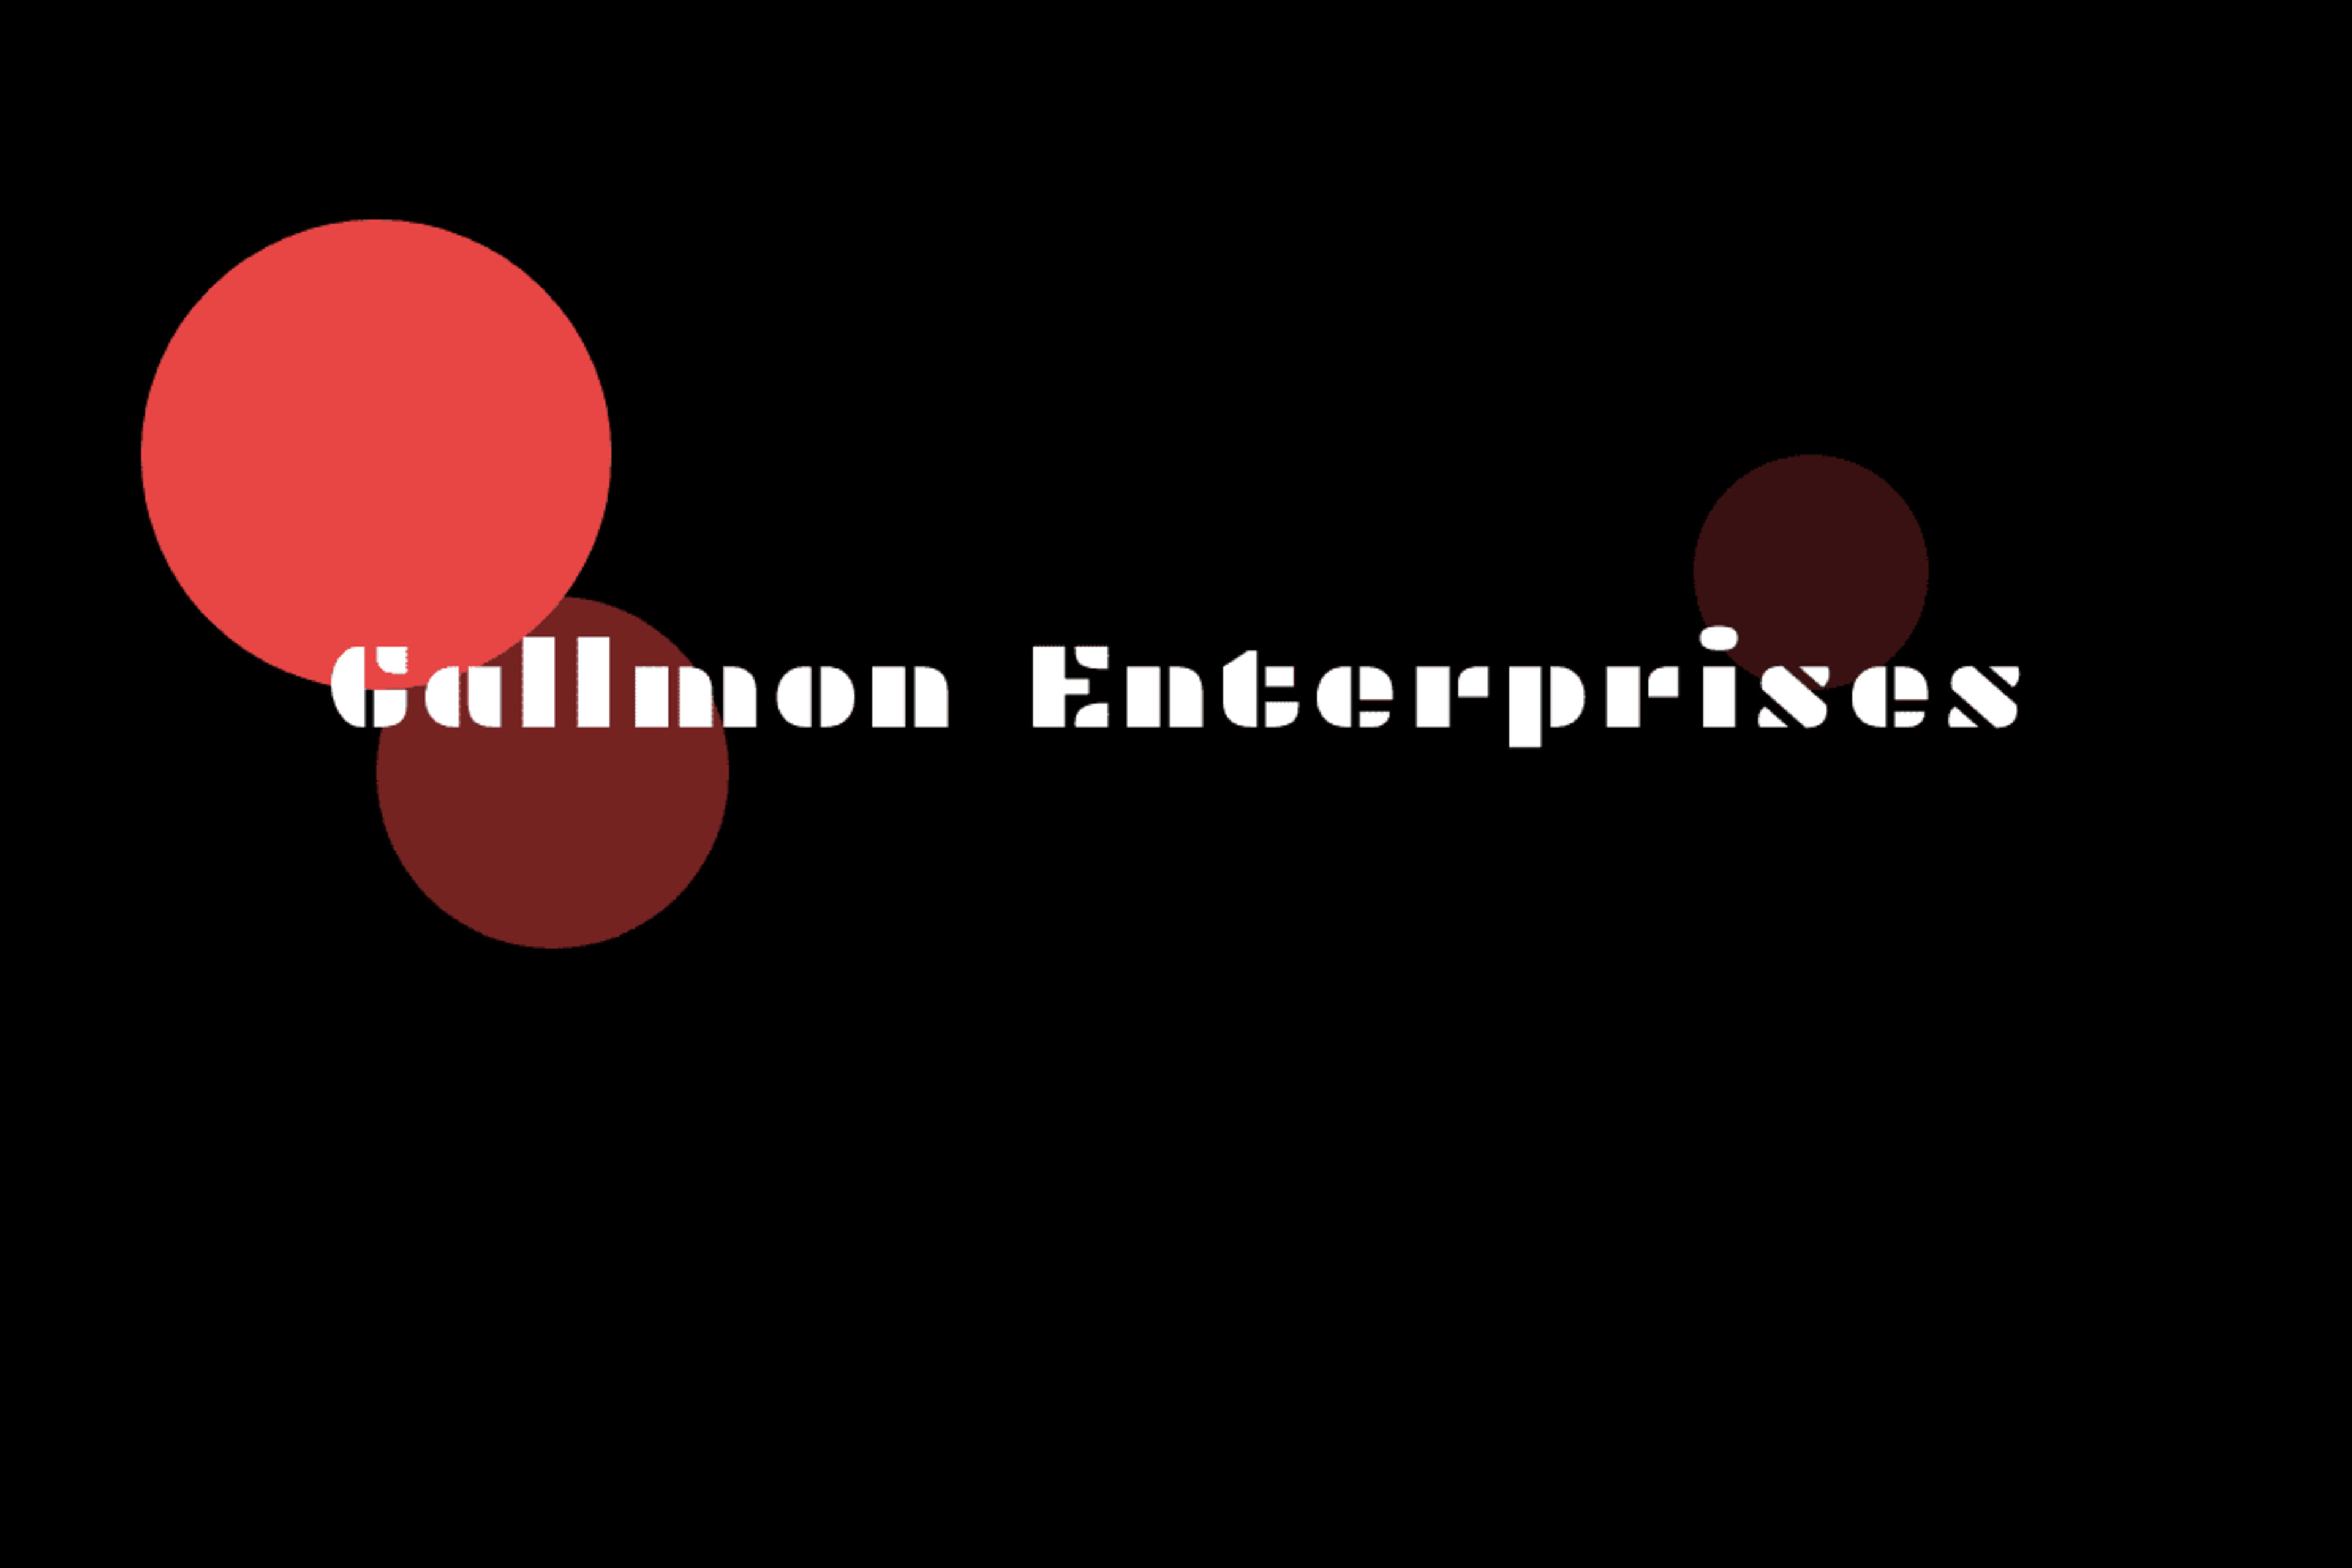 Gallmon Enterprises LLC